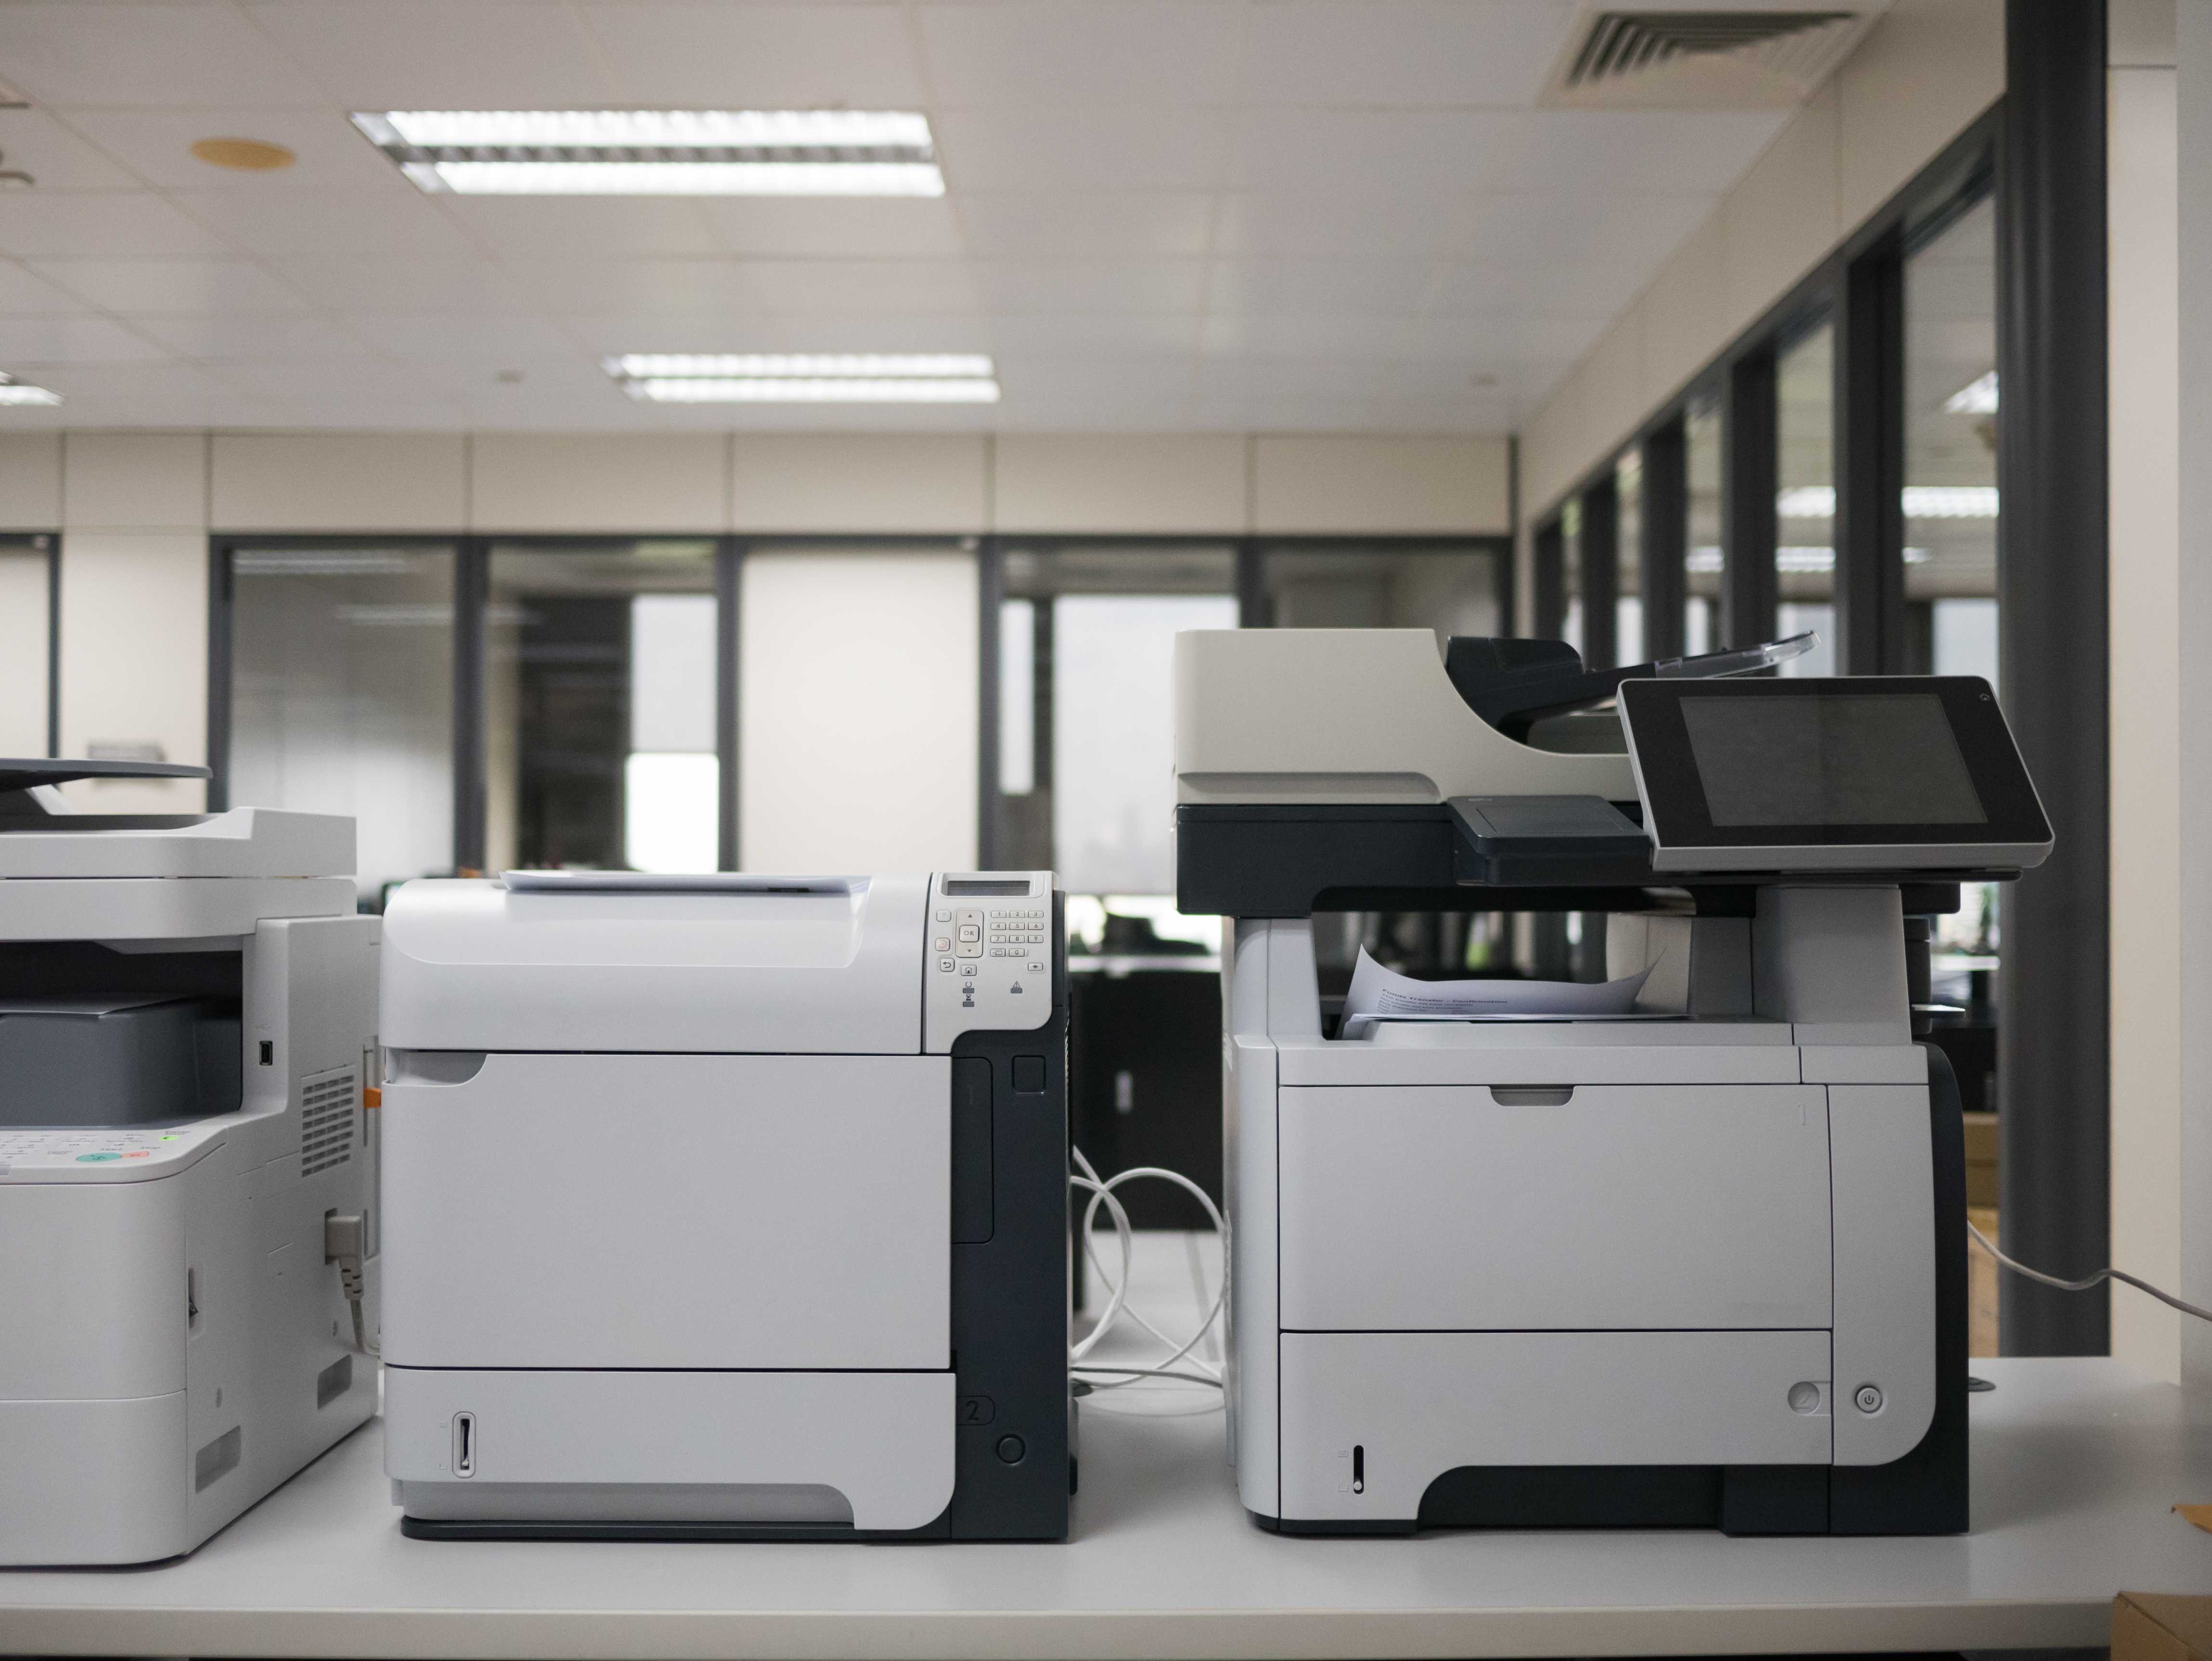 Средства печати документов. Принтер. Принтер в офисе. Принтер большой для офиса. Принтер МФУ.